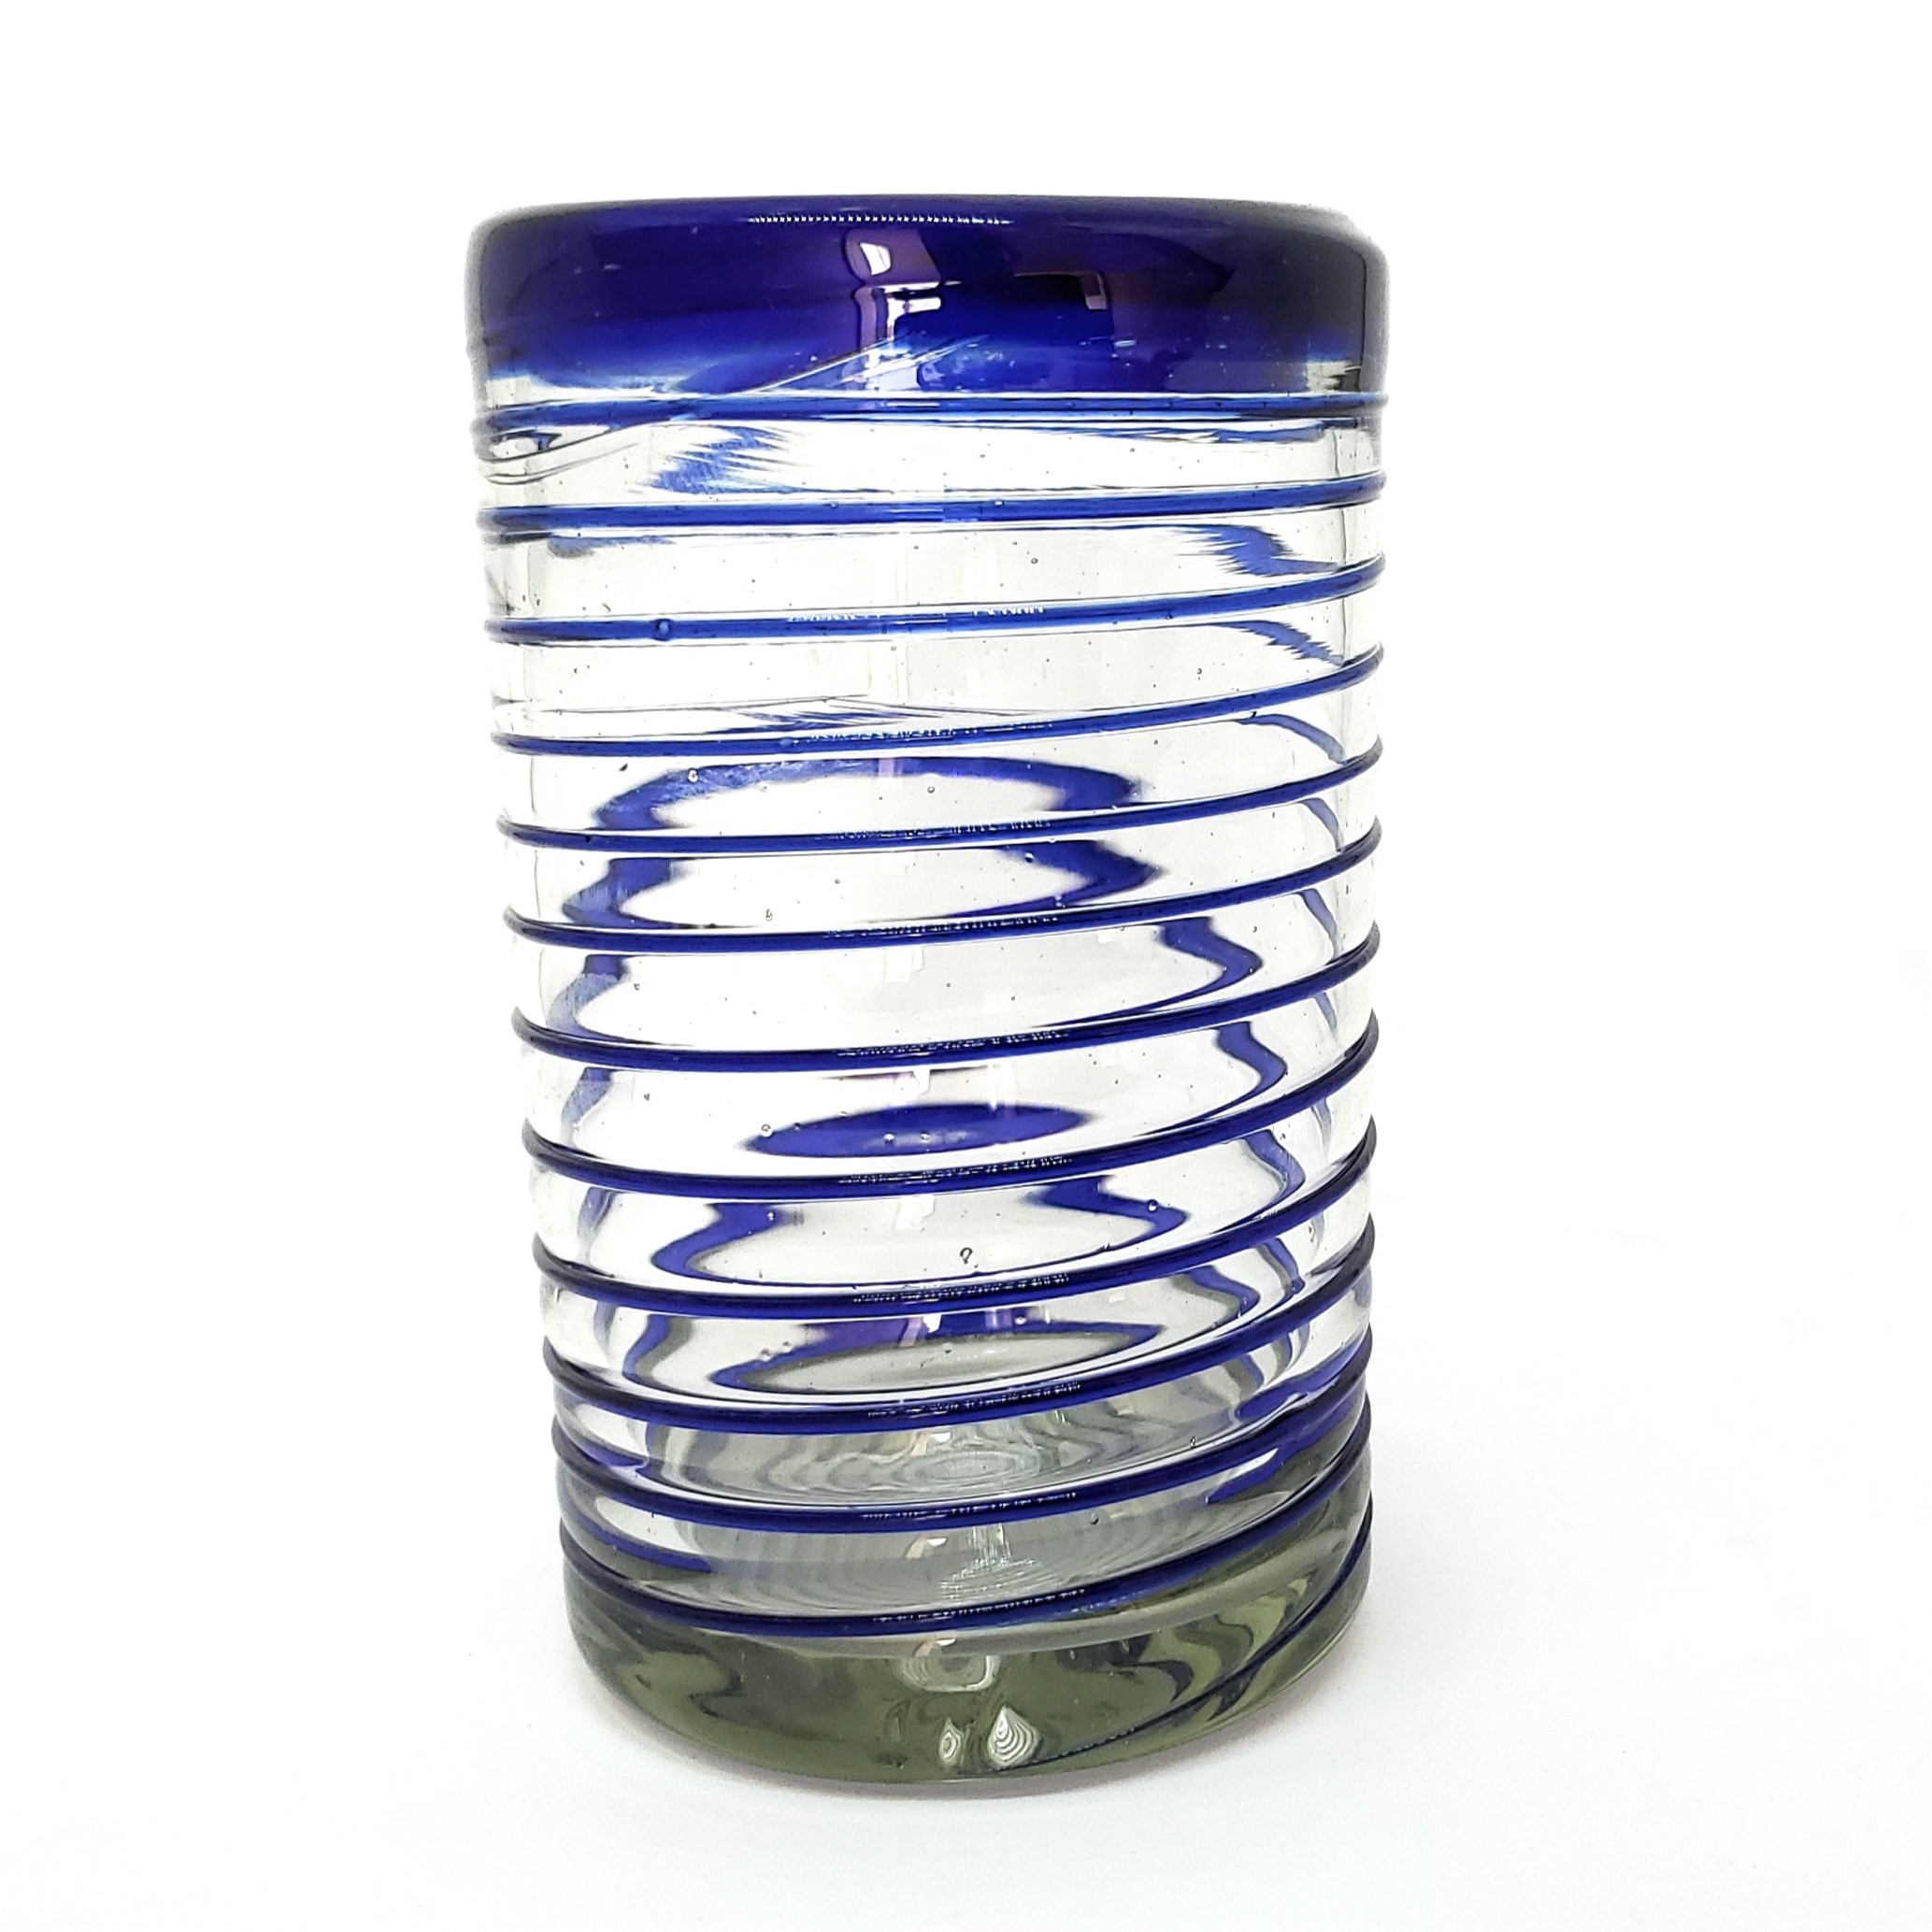  / Cobalt Blue Spiral 14 oz Drinking Glasses (set of 6)